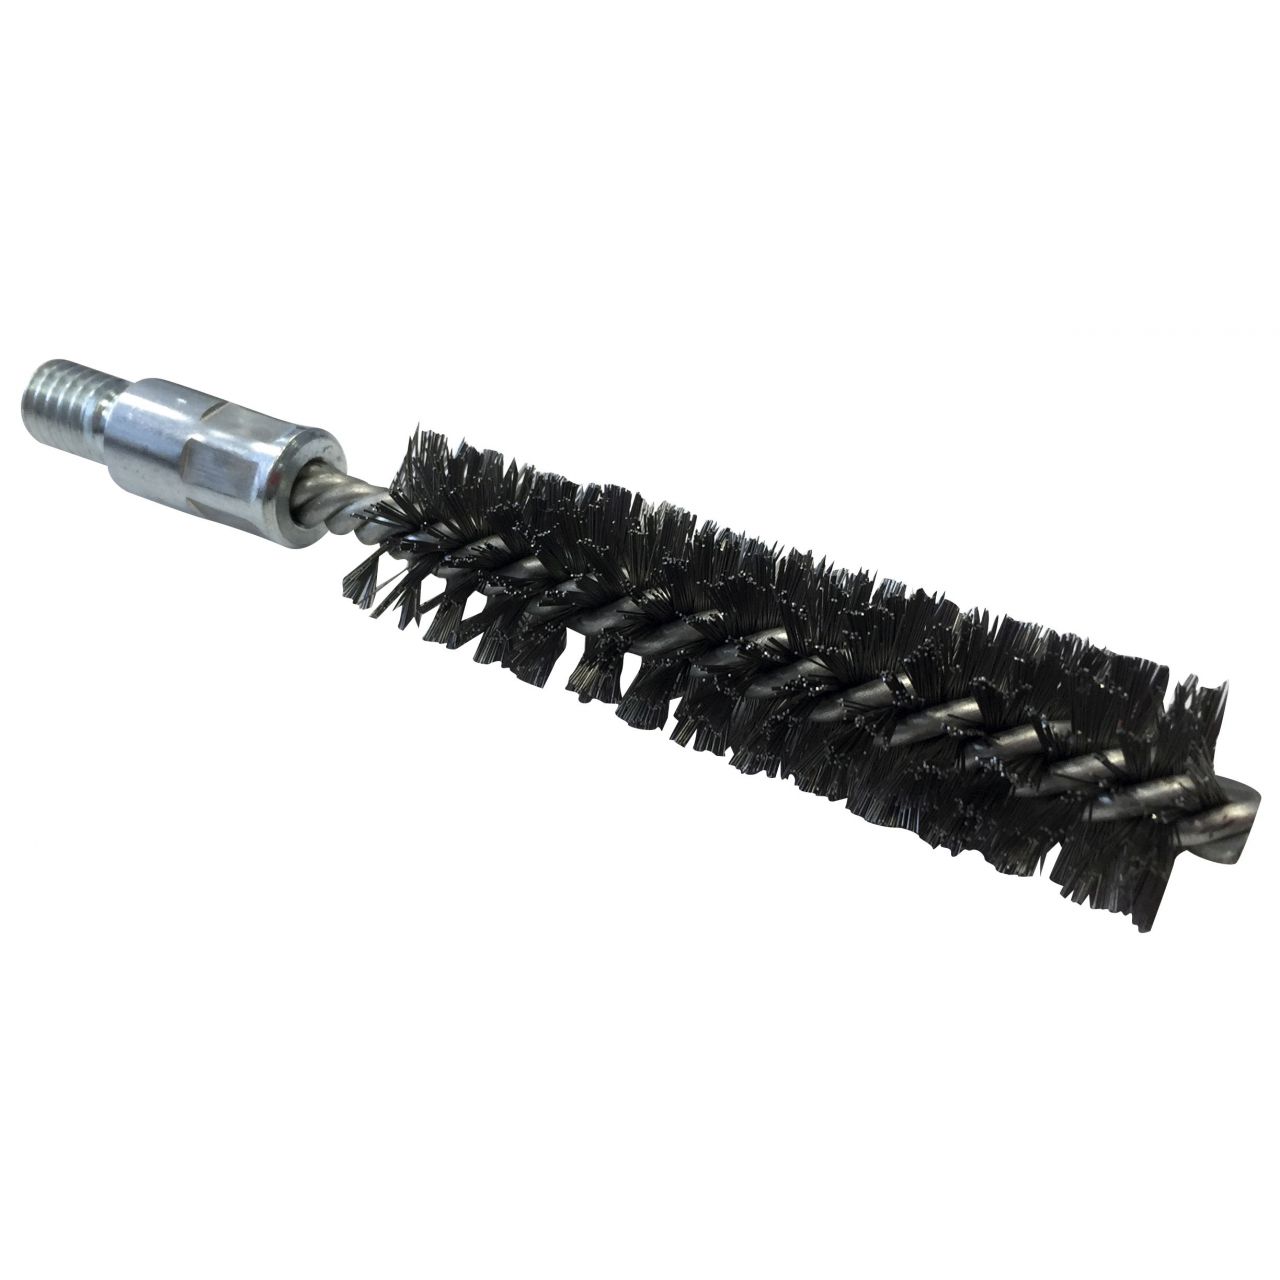 Cepillo limpiatubos con rosca de acero (110 mm x Ø 30 mm)